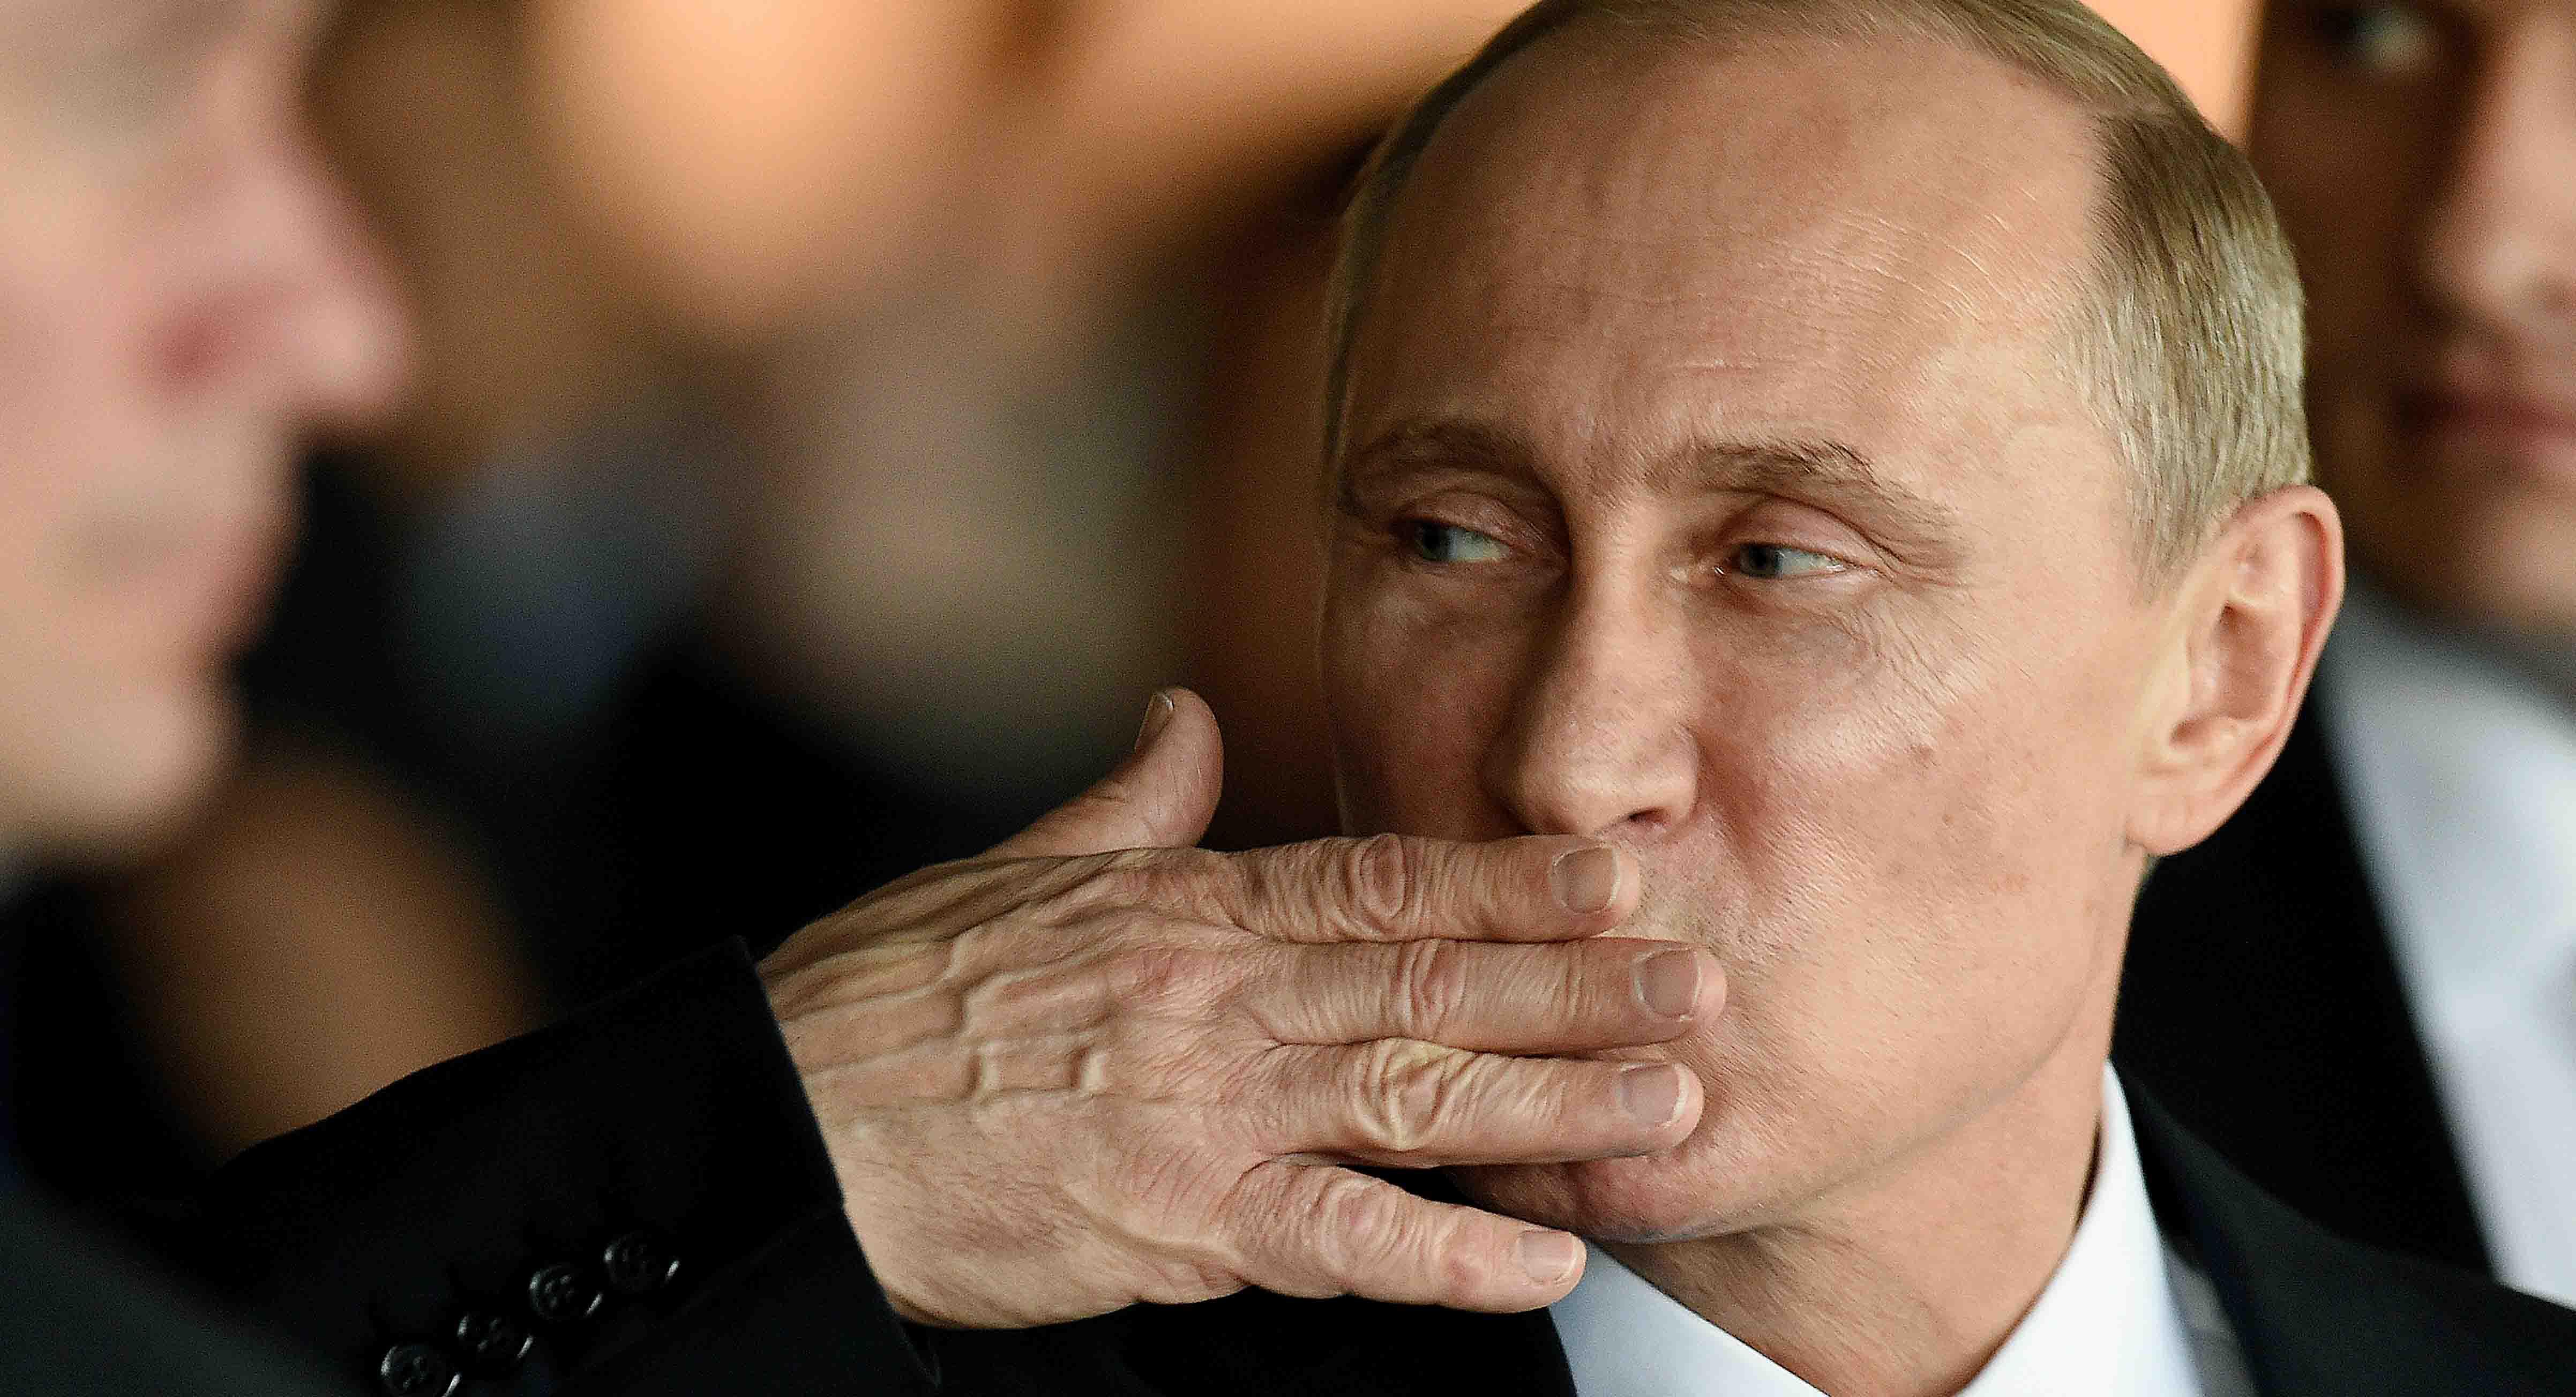 俄罗斯总统普京发表年度国情咨文